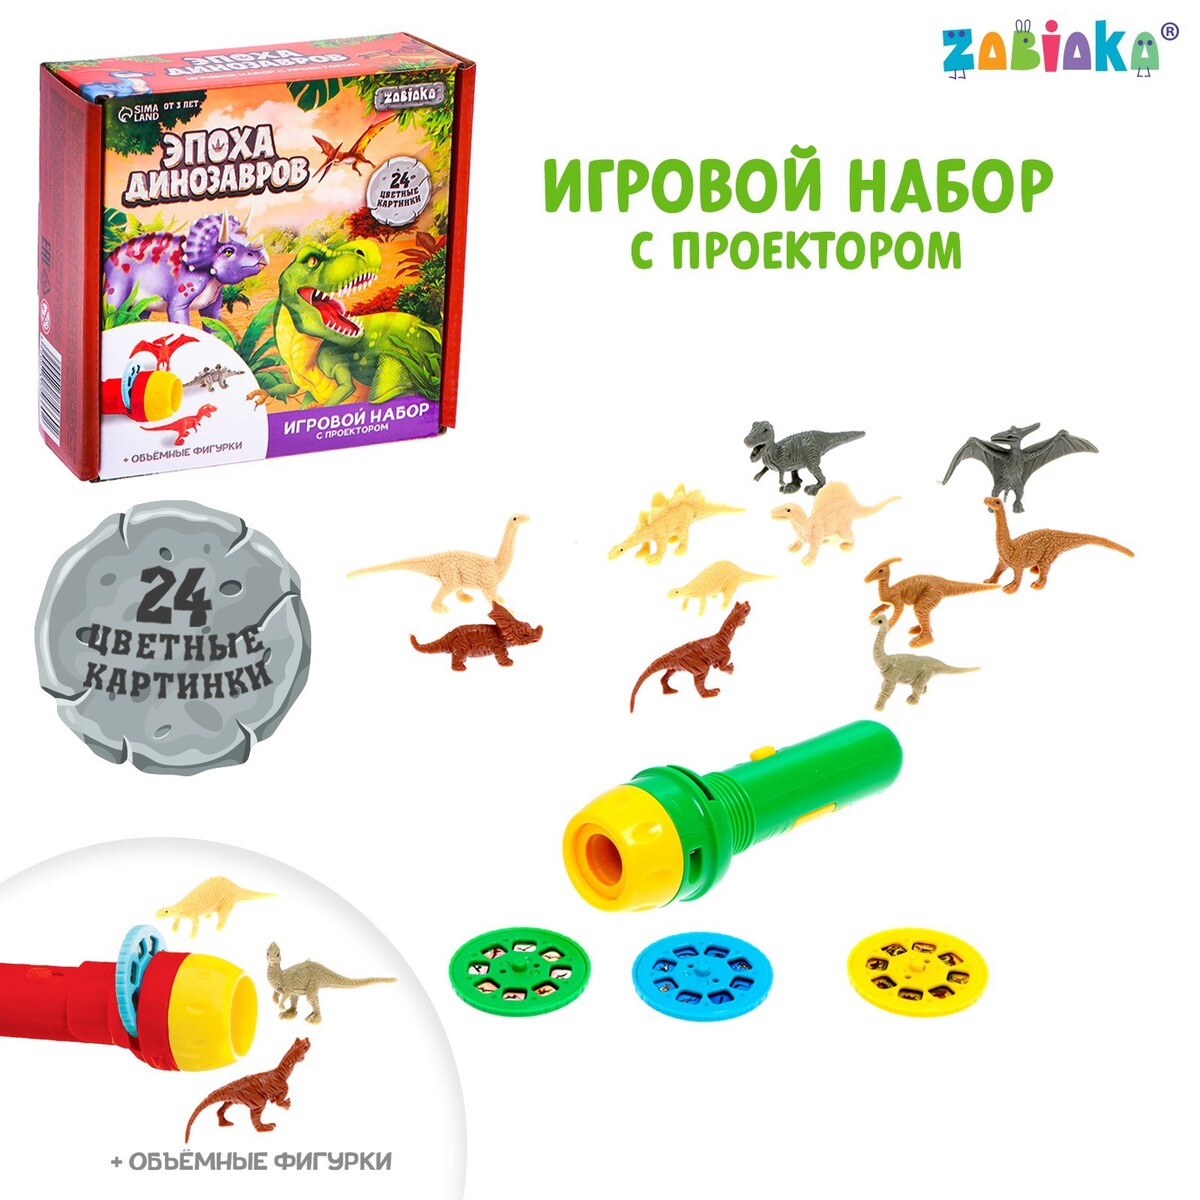 Игровой набор с проектором и фигурками набор для опытов эпоха динозавров конструктор раскраска трицератопс